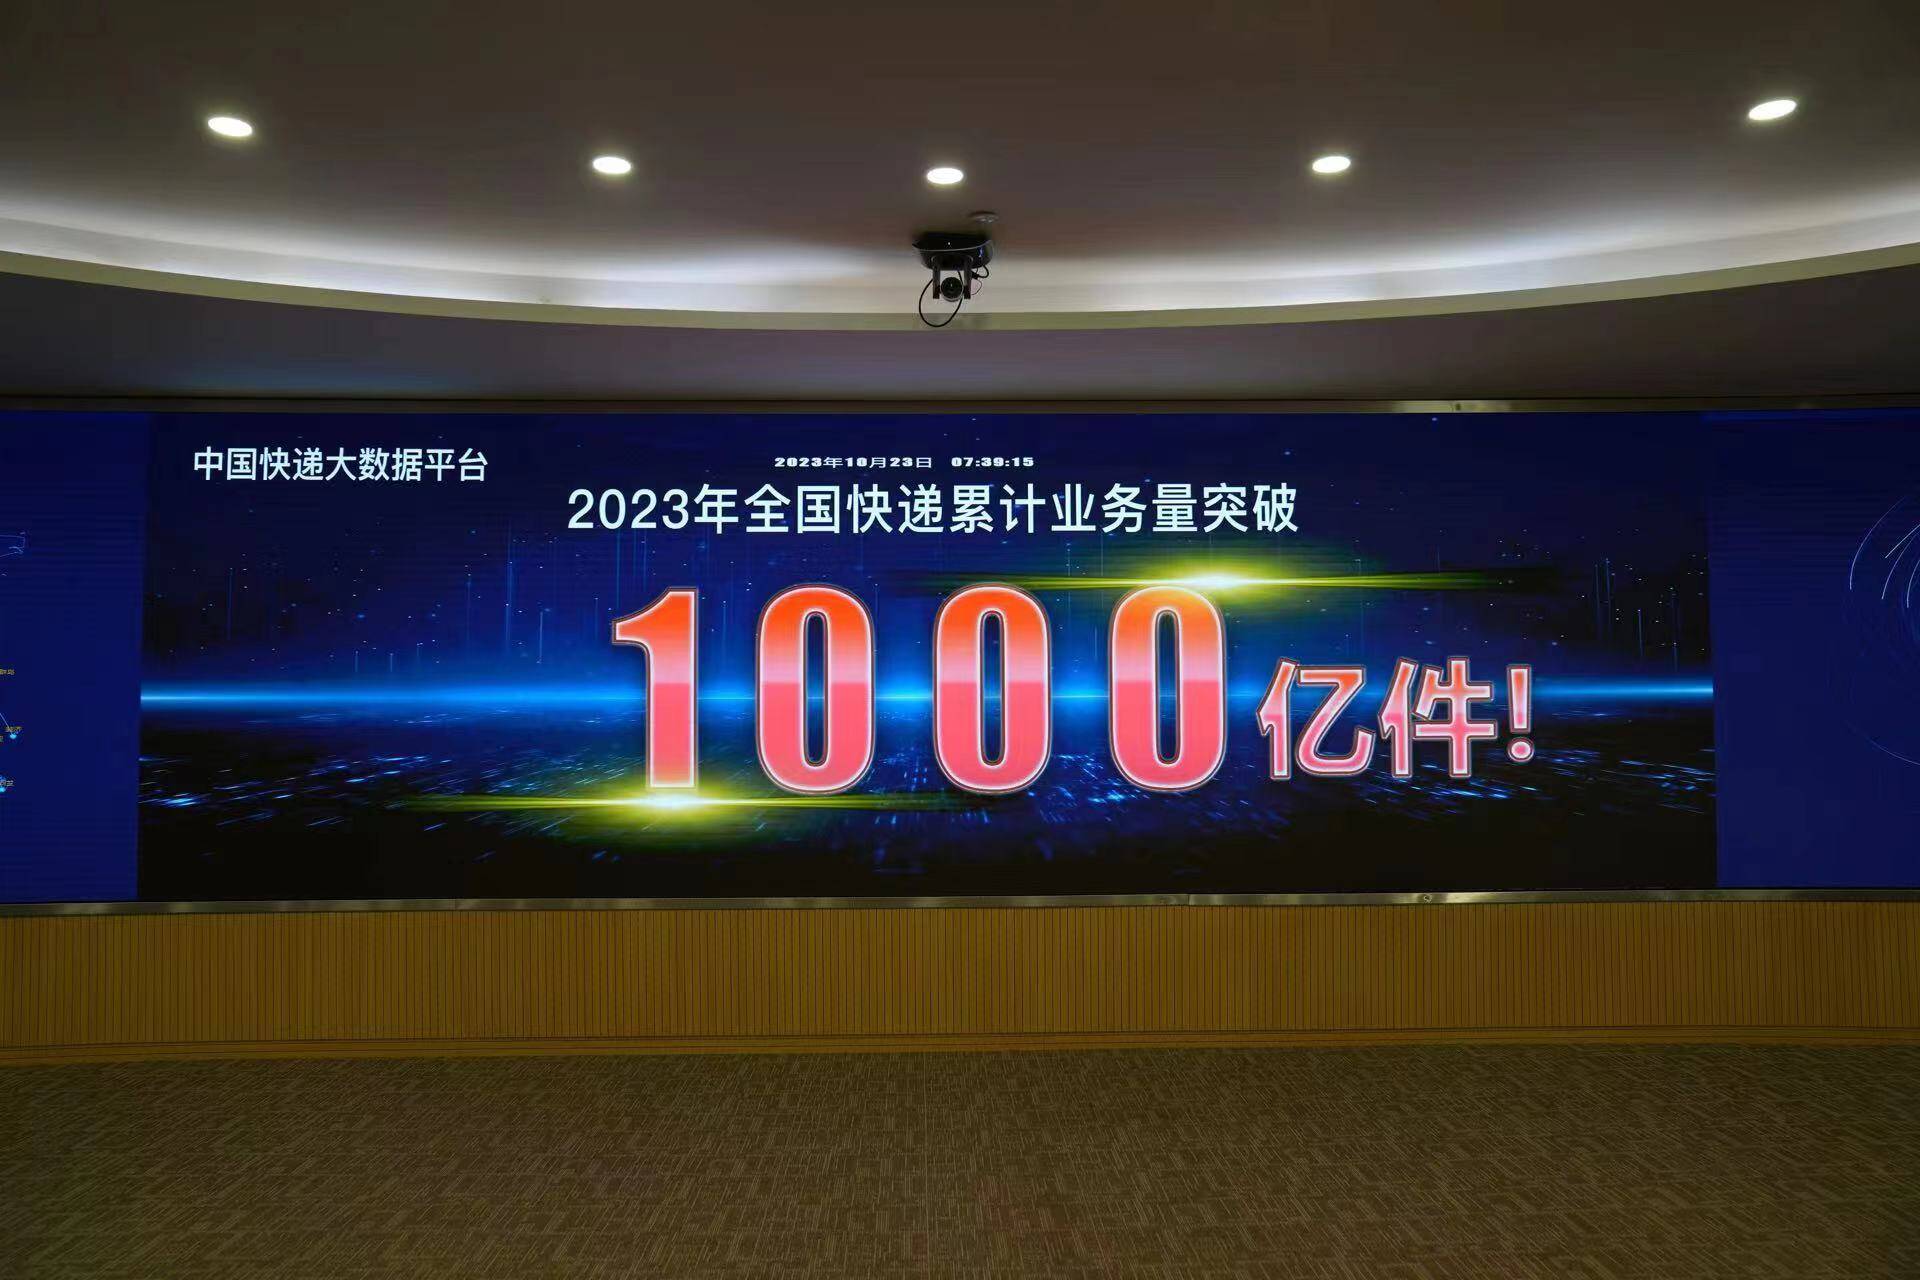 2023年第1000亿件快件在青岛发出